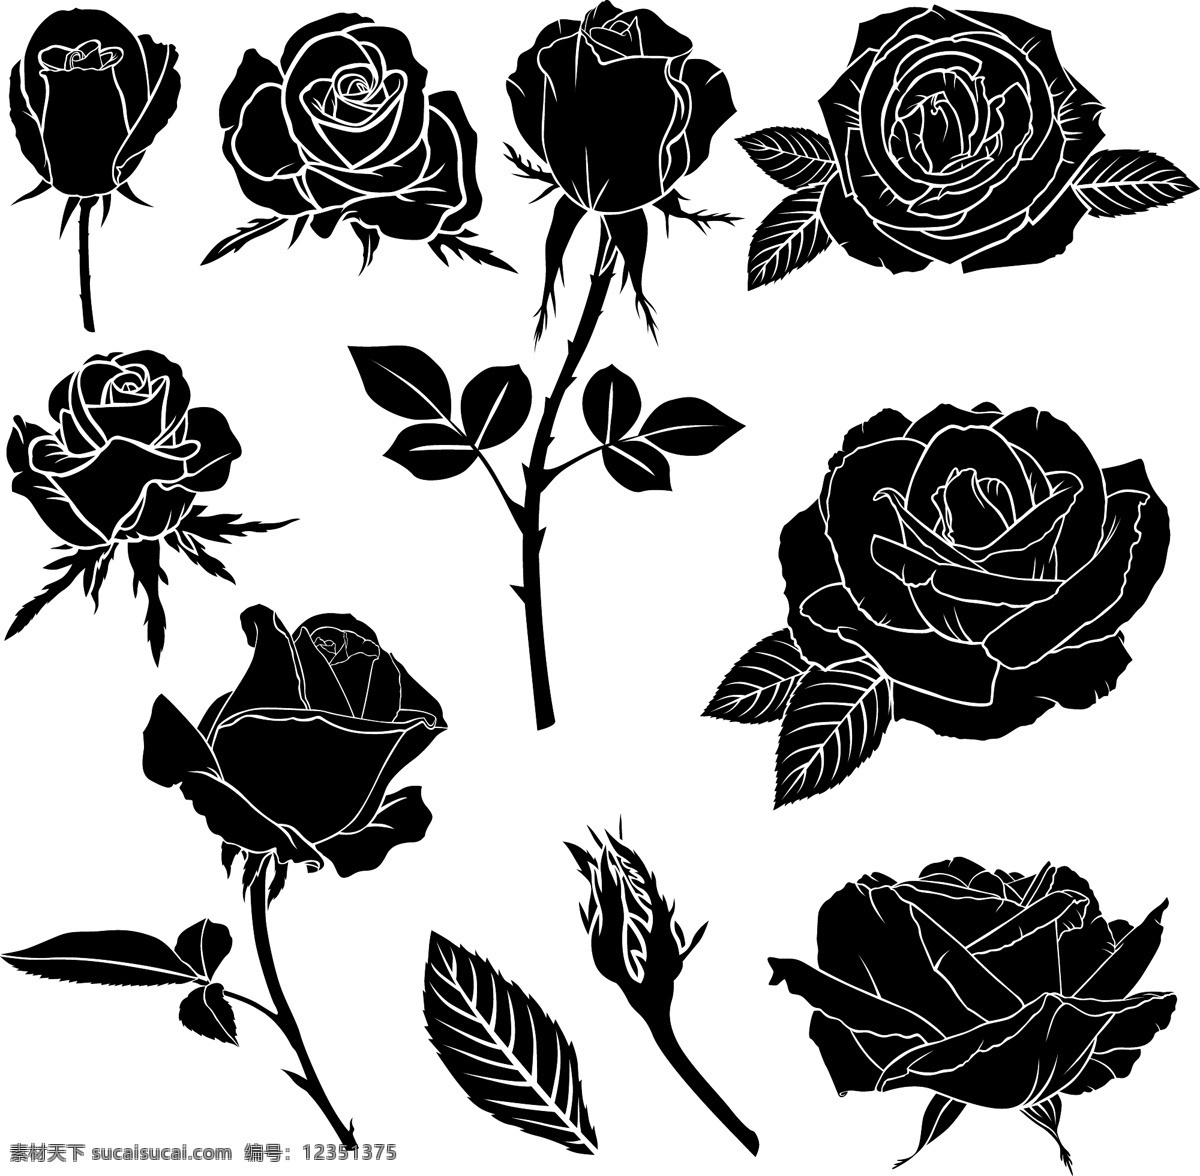 黑白 线条 剪影 玫瑰花 图案 叶子 玫瑰 请柬 底纹边框 花边花纹